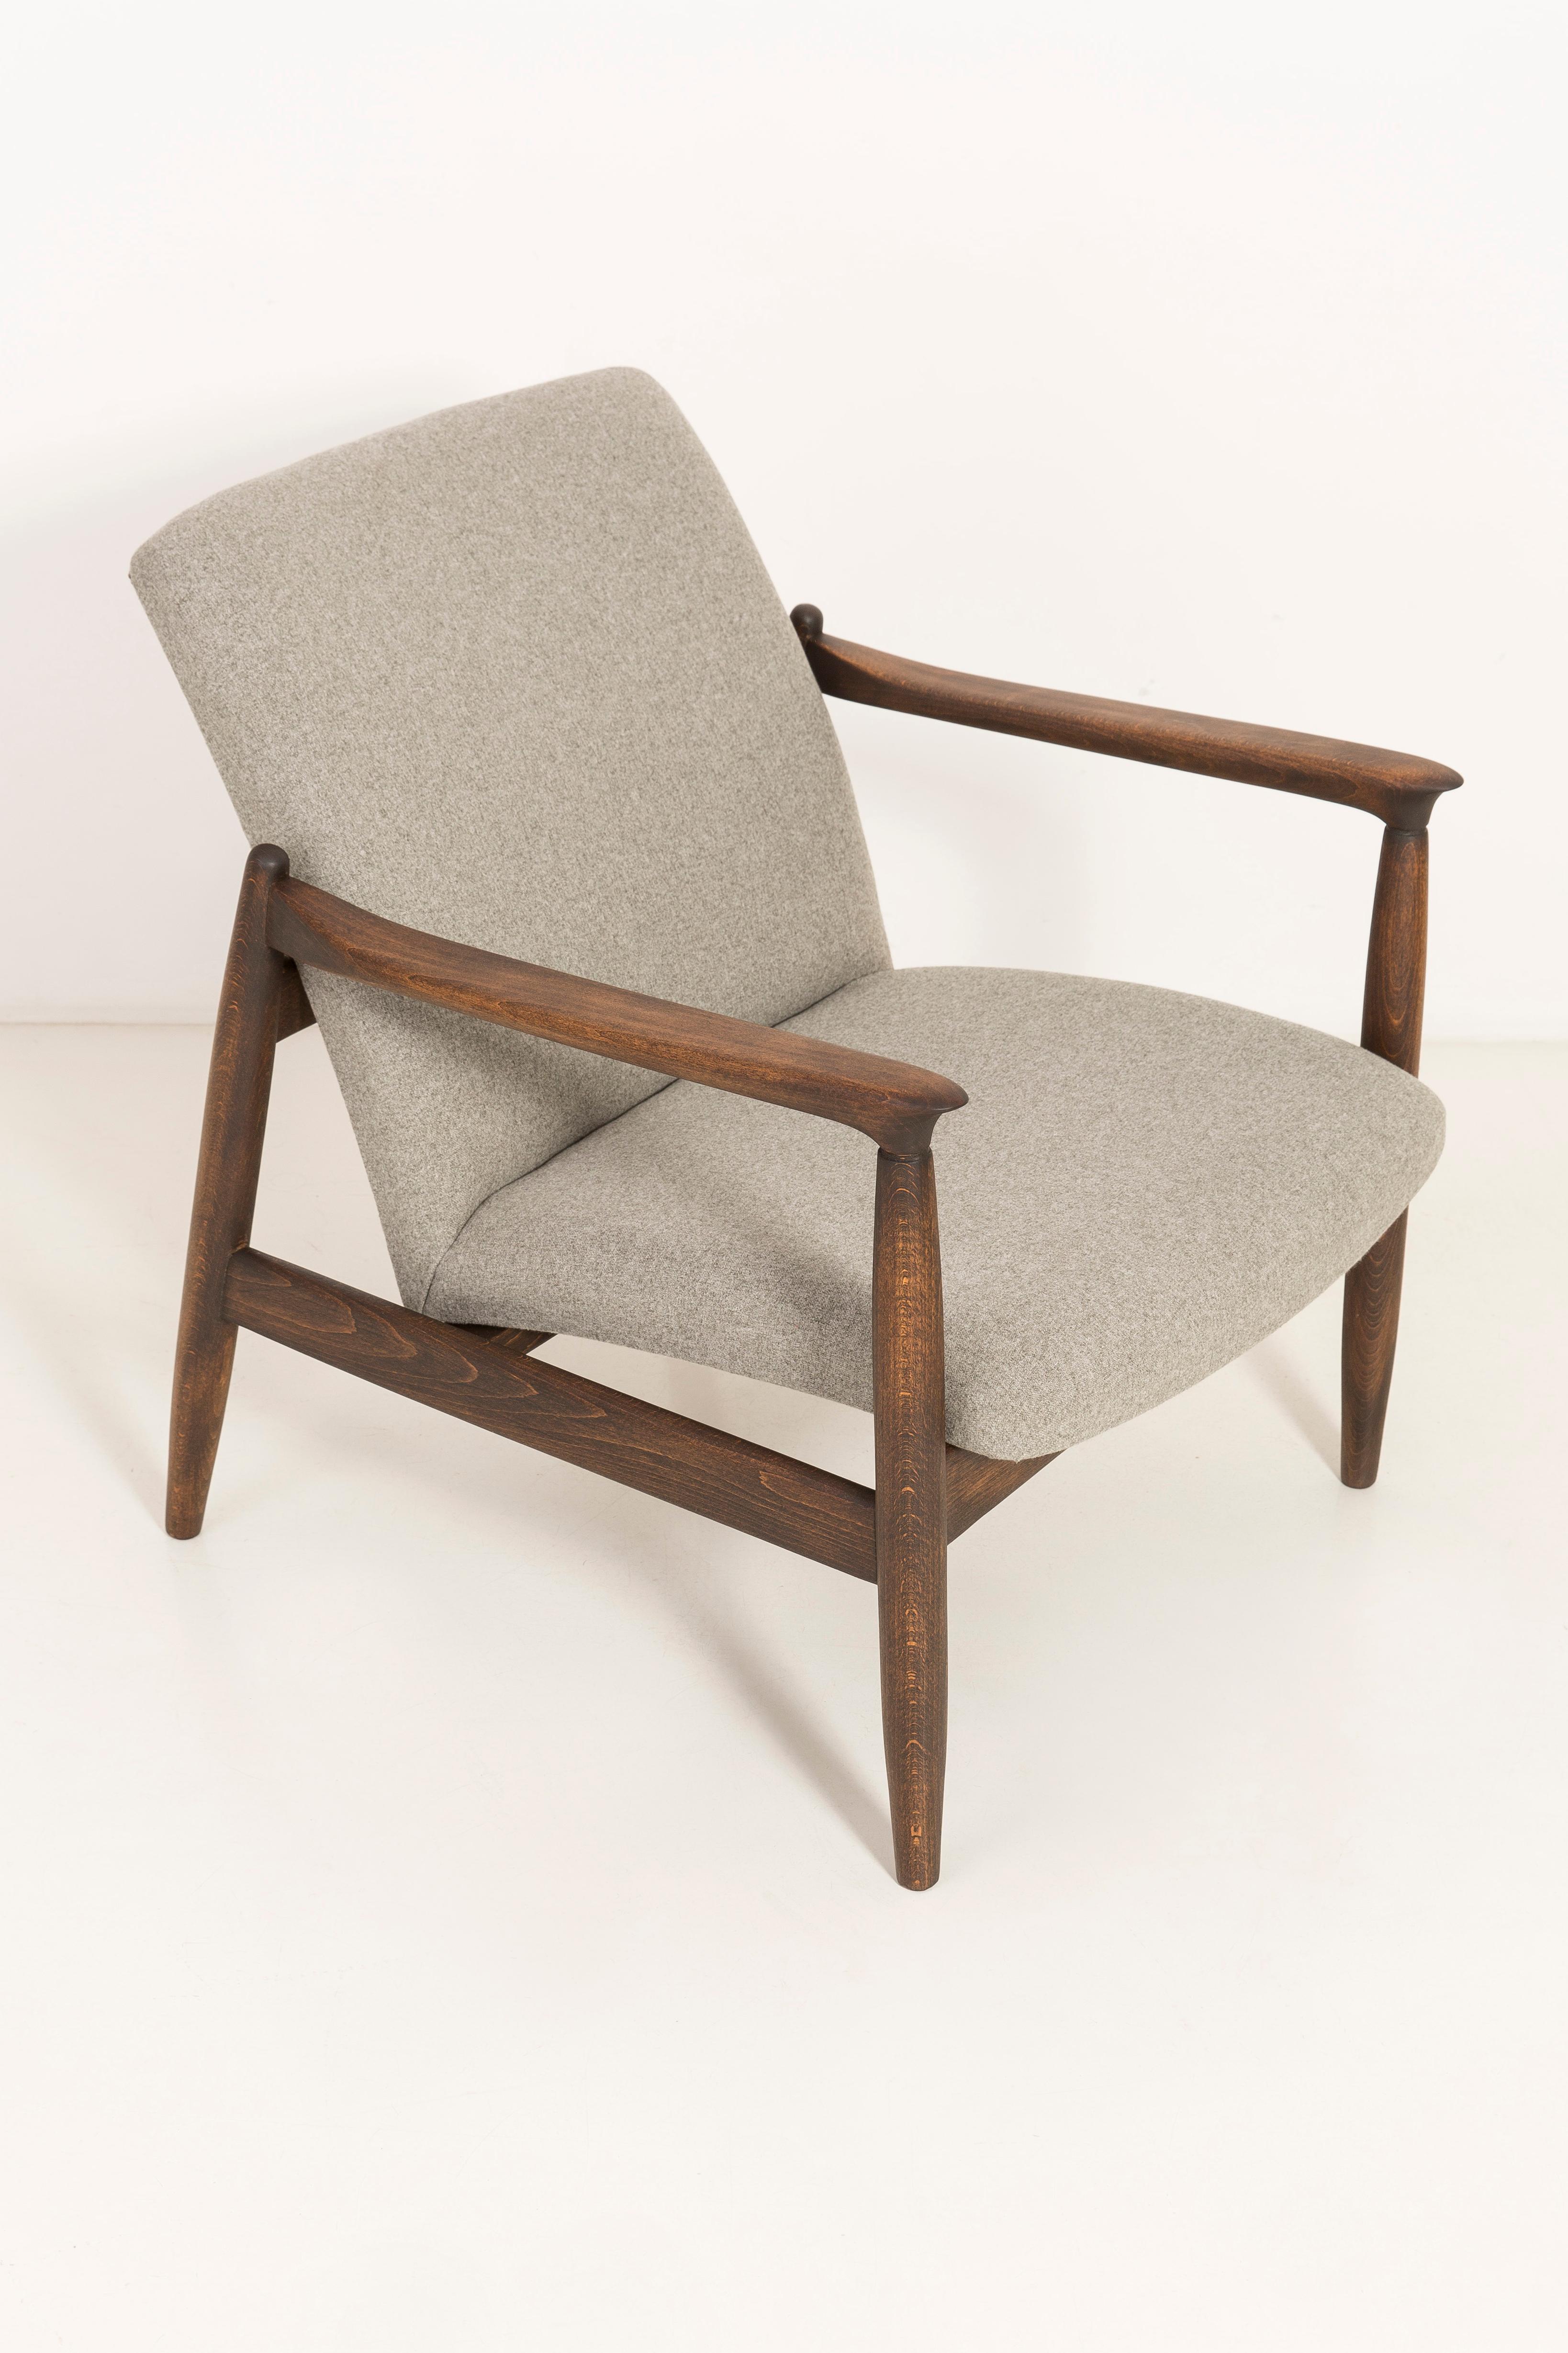 Beigefarbener Sessel, entworfen von Edmund Homa. Der Sessel wurde in den 1960er Jahren in der Möbelfabrik Goscieninska hergestellt. Er ist aus massivem Buchenholz gefertigt. Der Sessel vom Typ GFM gilt als einer der besten polnischen Sesselentwürfe